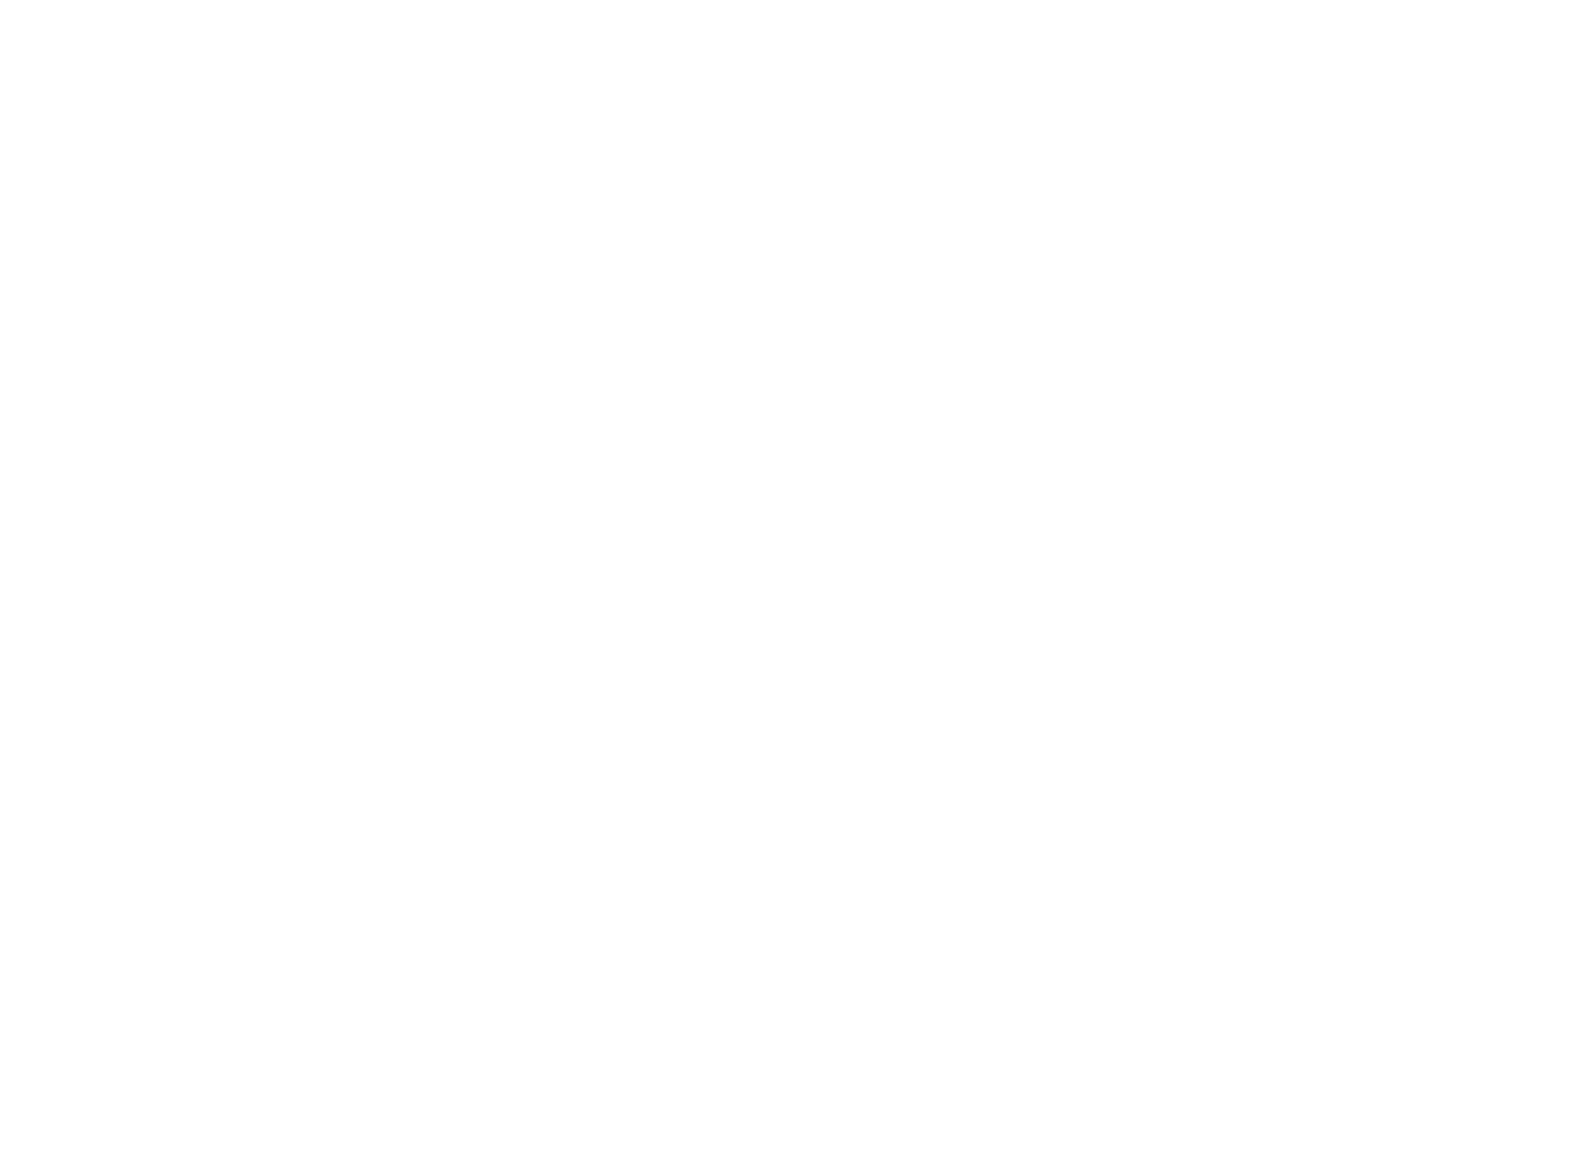 Klabin logo large for dark backgrounds (transparent PNG)